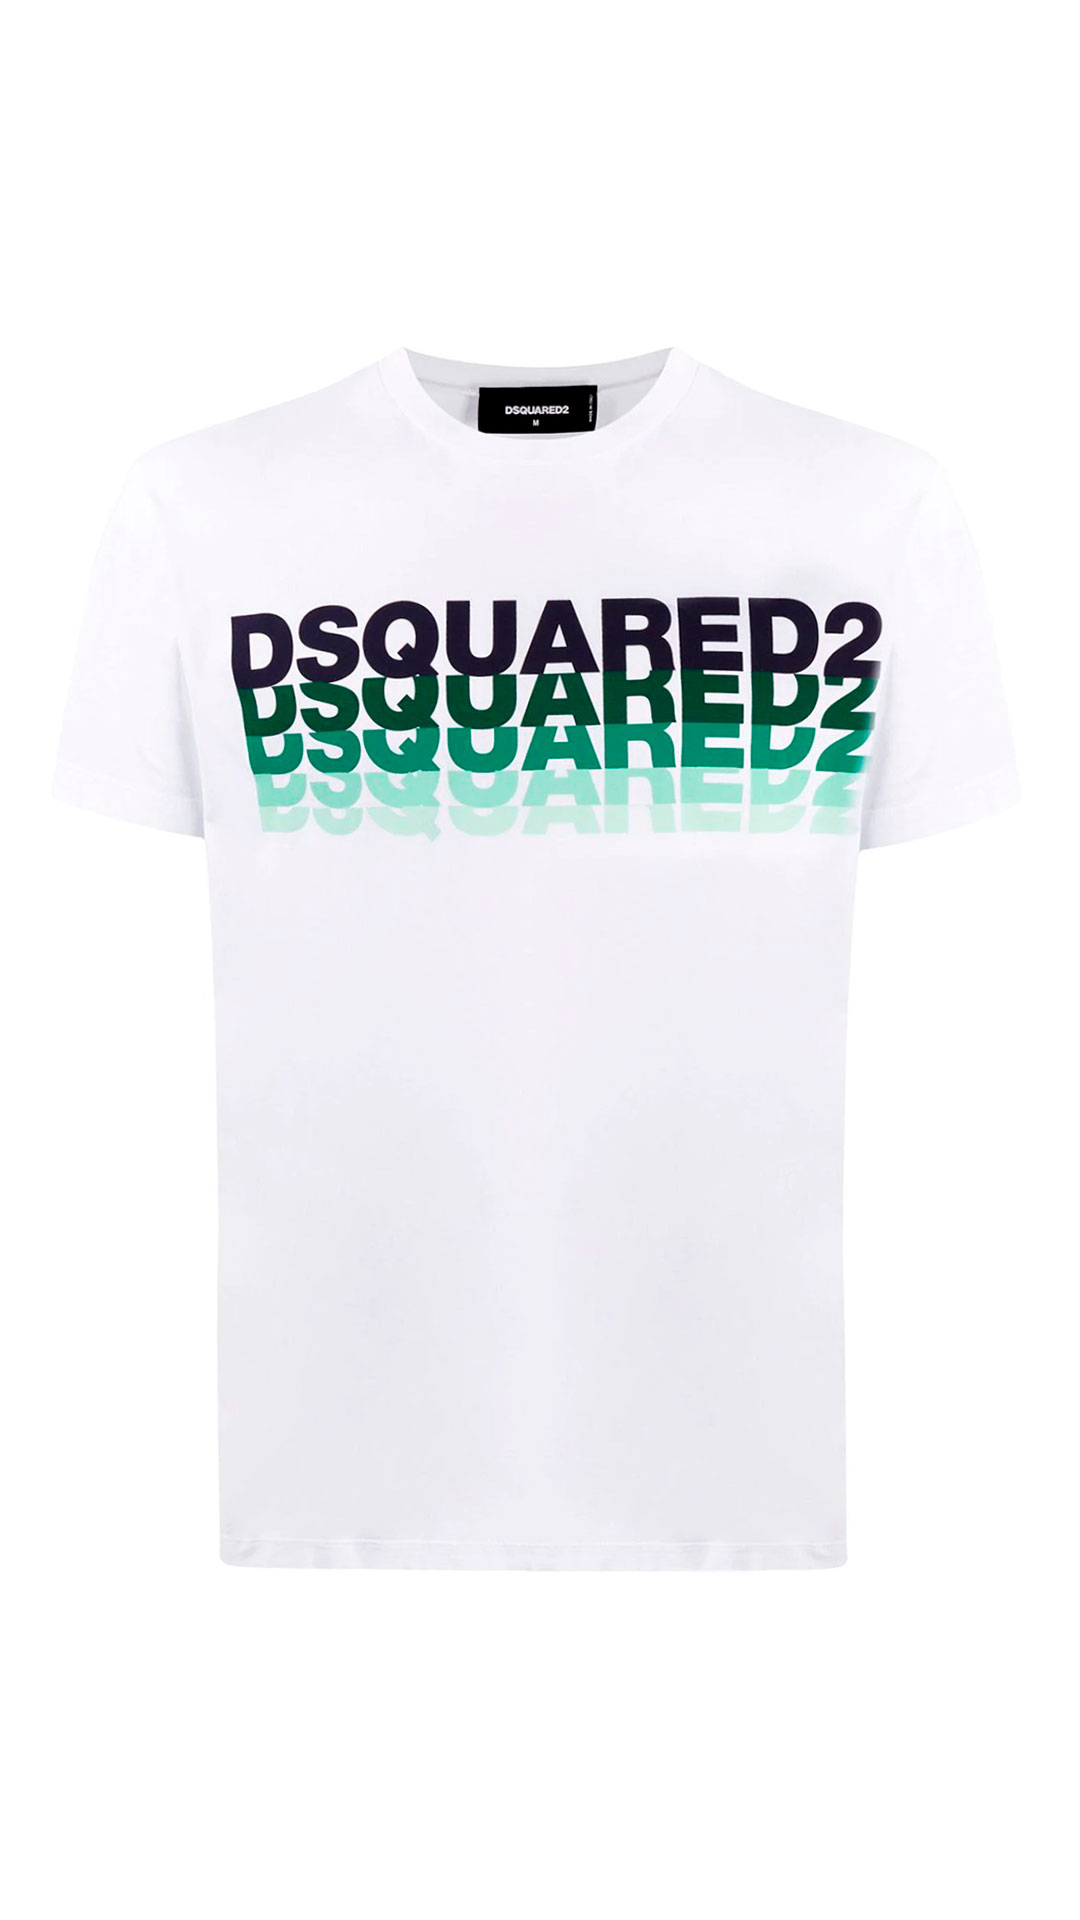 Buy > camiseta dsquared2 > in stock